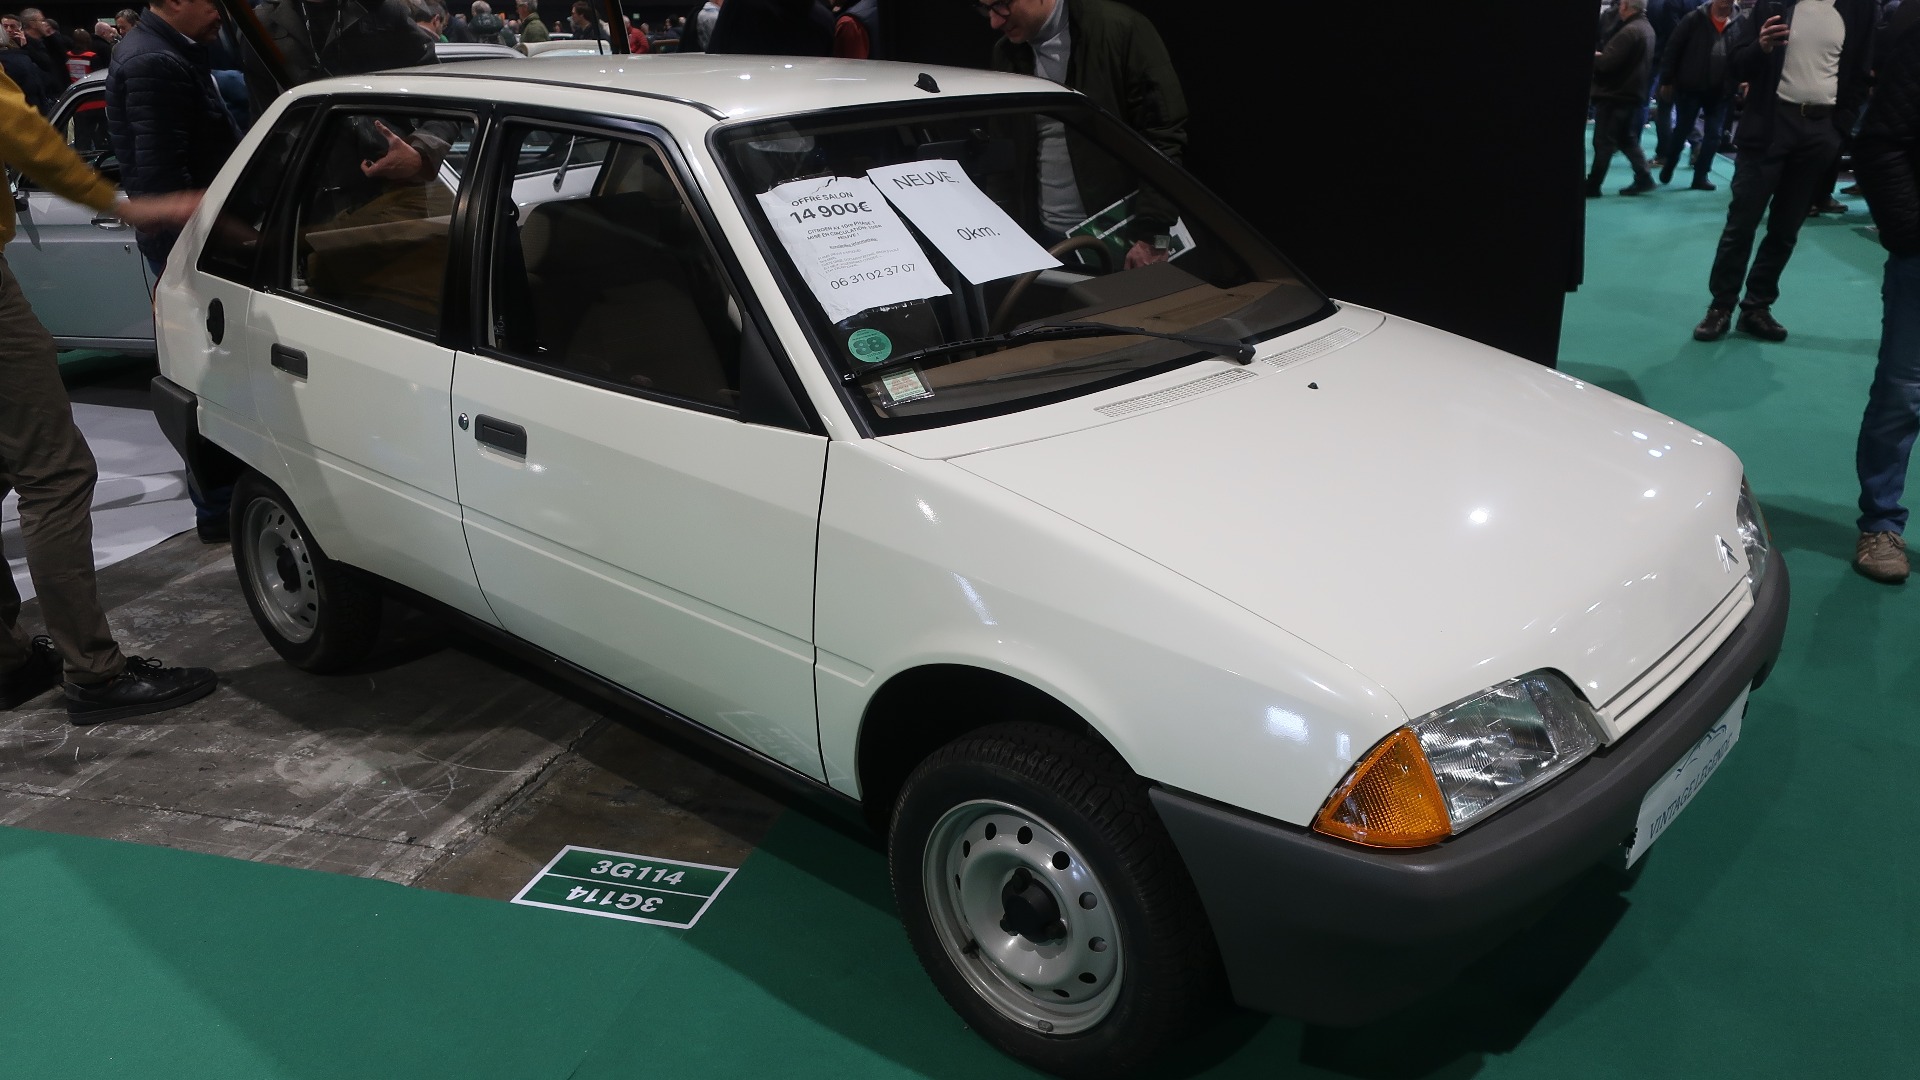 Denne måtte da bli solgt får man tro. 1988 Citroën AX som ny, med bare 65 km på telleren. For 14.900 Euro sikret du deg nybil for billige penger.